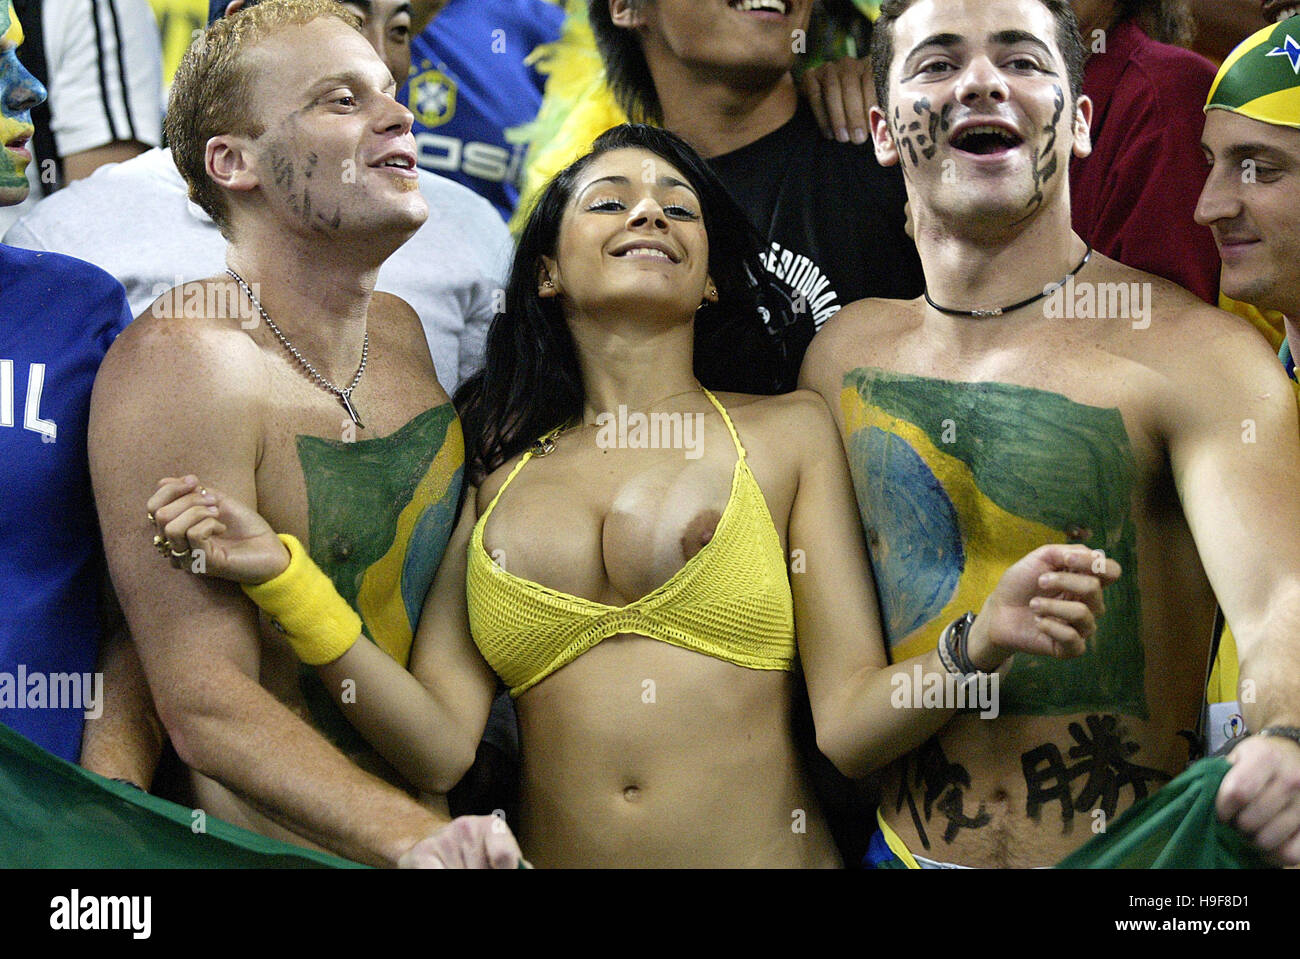 Only fans brazilian